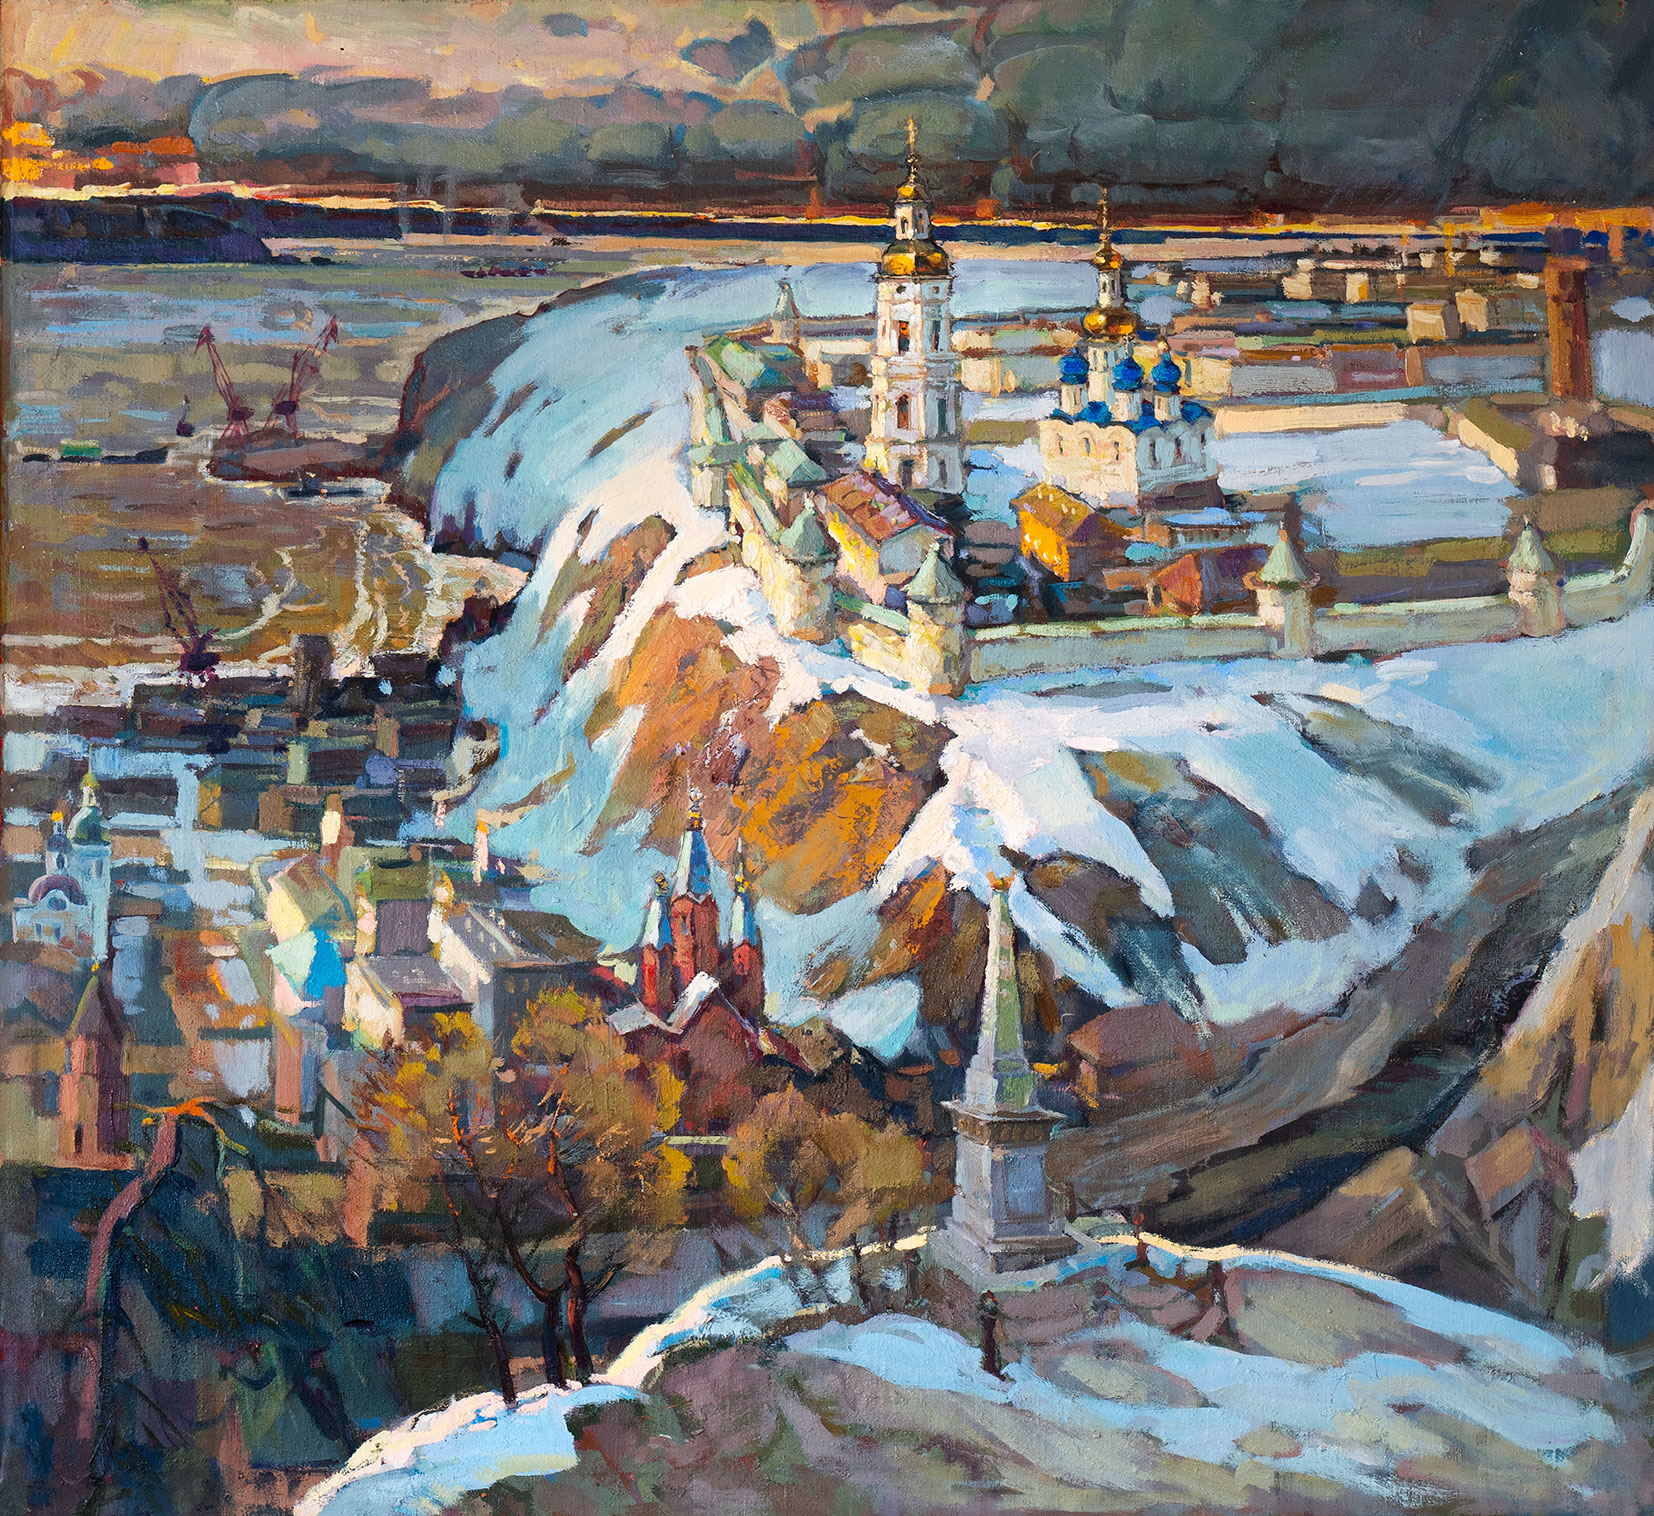 Old City Tobolsk - 1, Sergey Kostylev, Buy the painting Oil